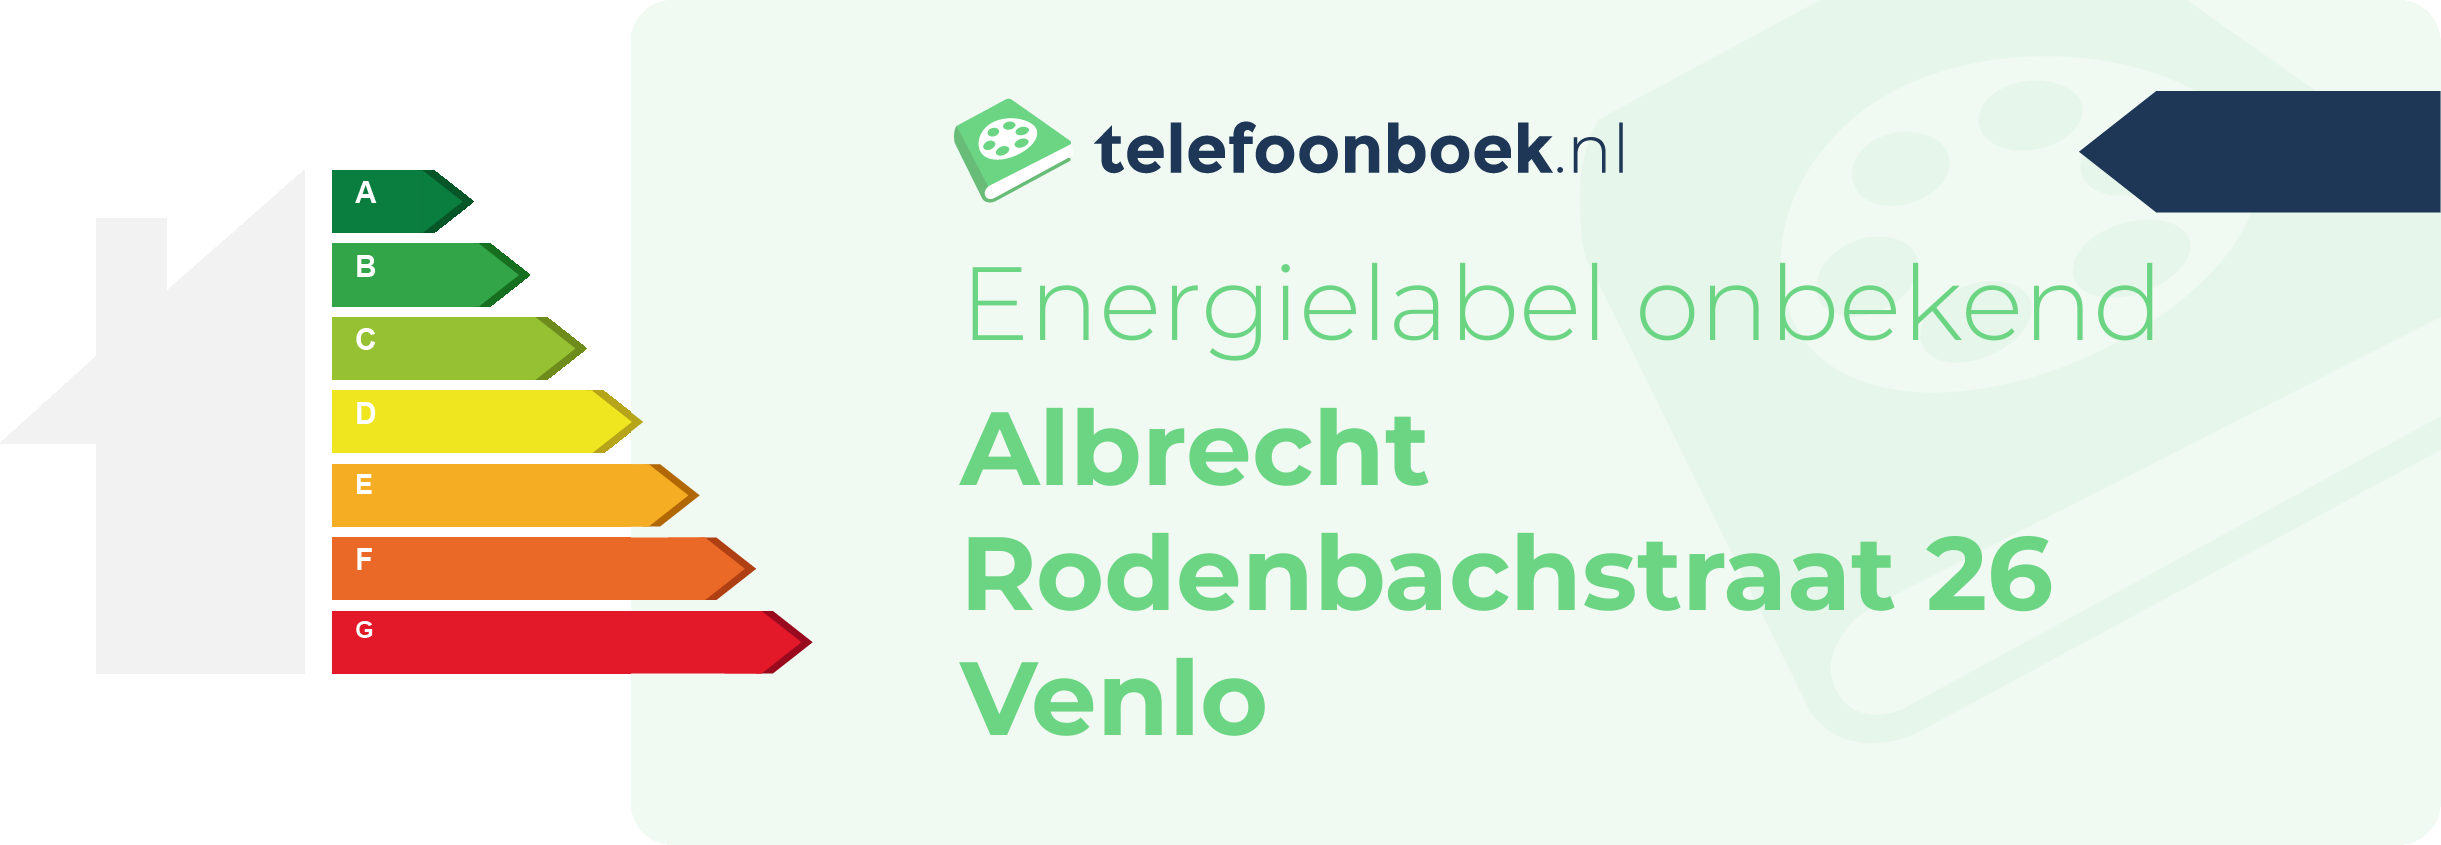 Energielabel Albrecht Rodenbachstraat 26 Venlo